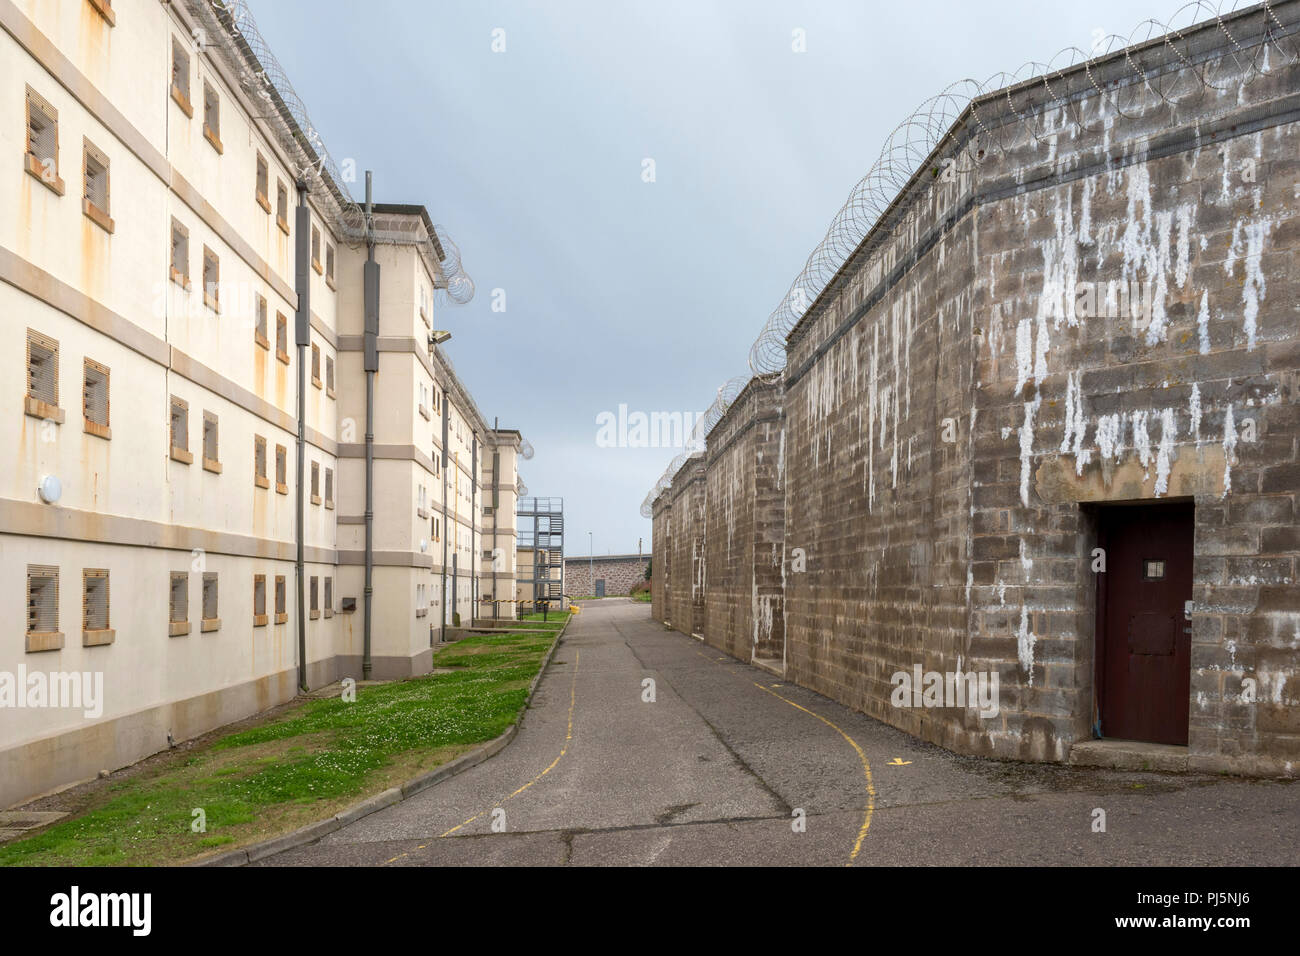 Zelle Bausteine und Gebäude in Peterhead Gefängnis, Schottland. Ursprünglich im Jahre 1888 eröffnet, das Gefängnis geschlossen in 2013 und ist heute als Museum erhalten. Stockfoto